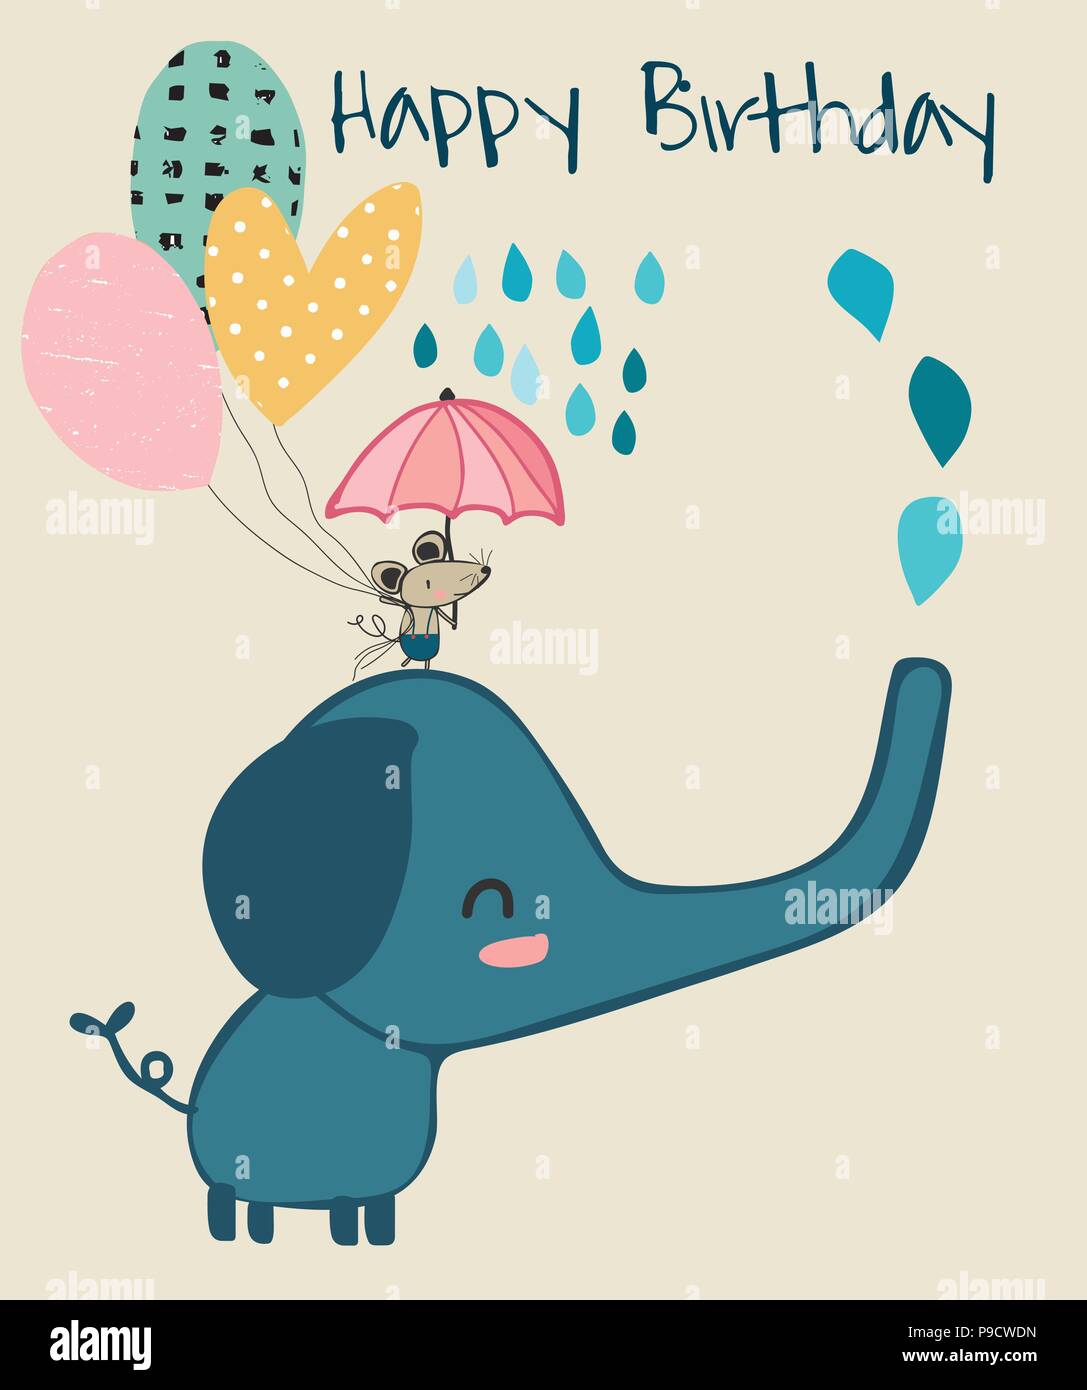 Éléphant mignon et petite souris holding umbrella, carte d'anniversaire Illustration de Vecteur